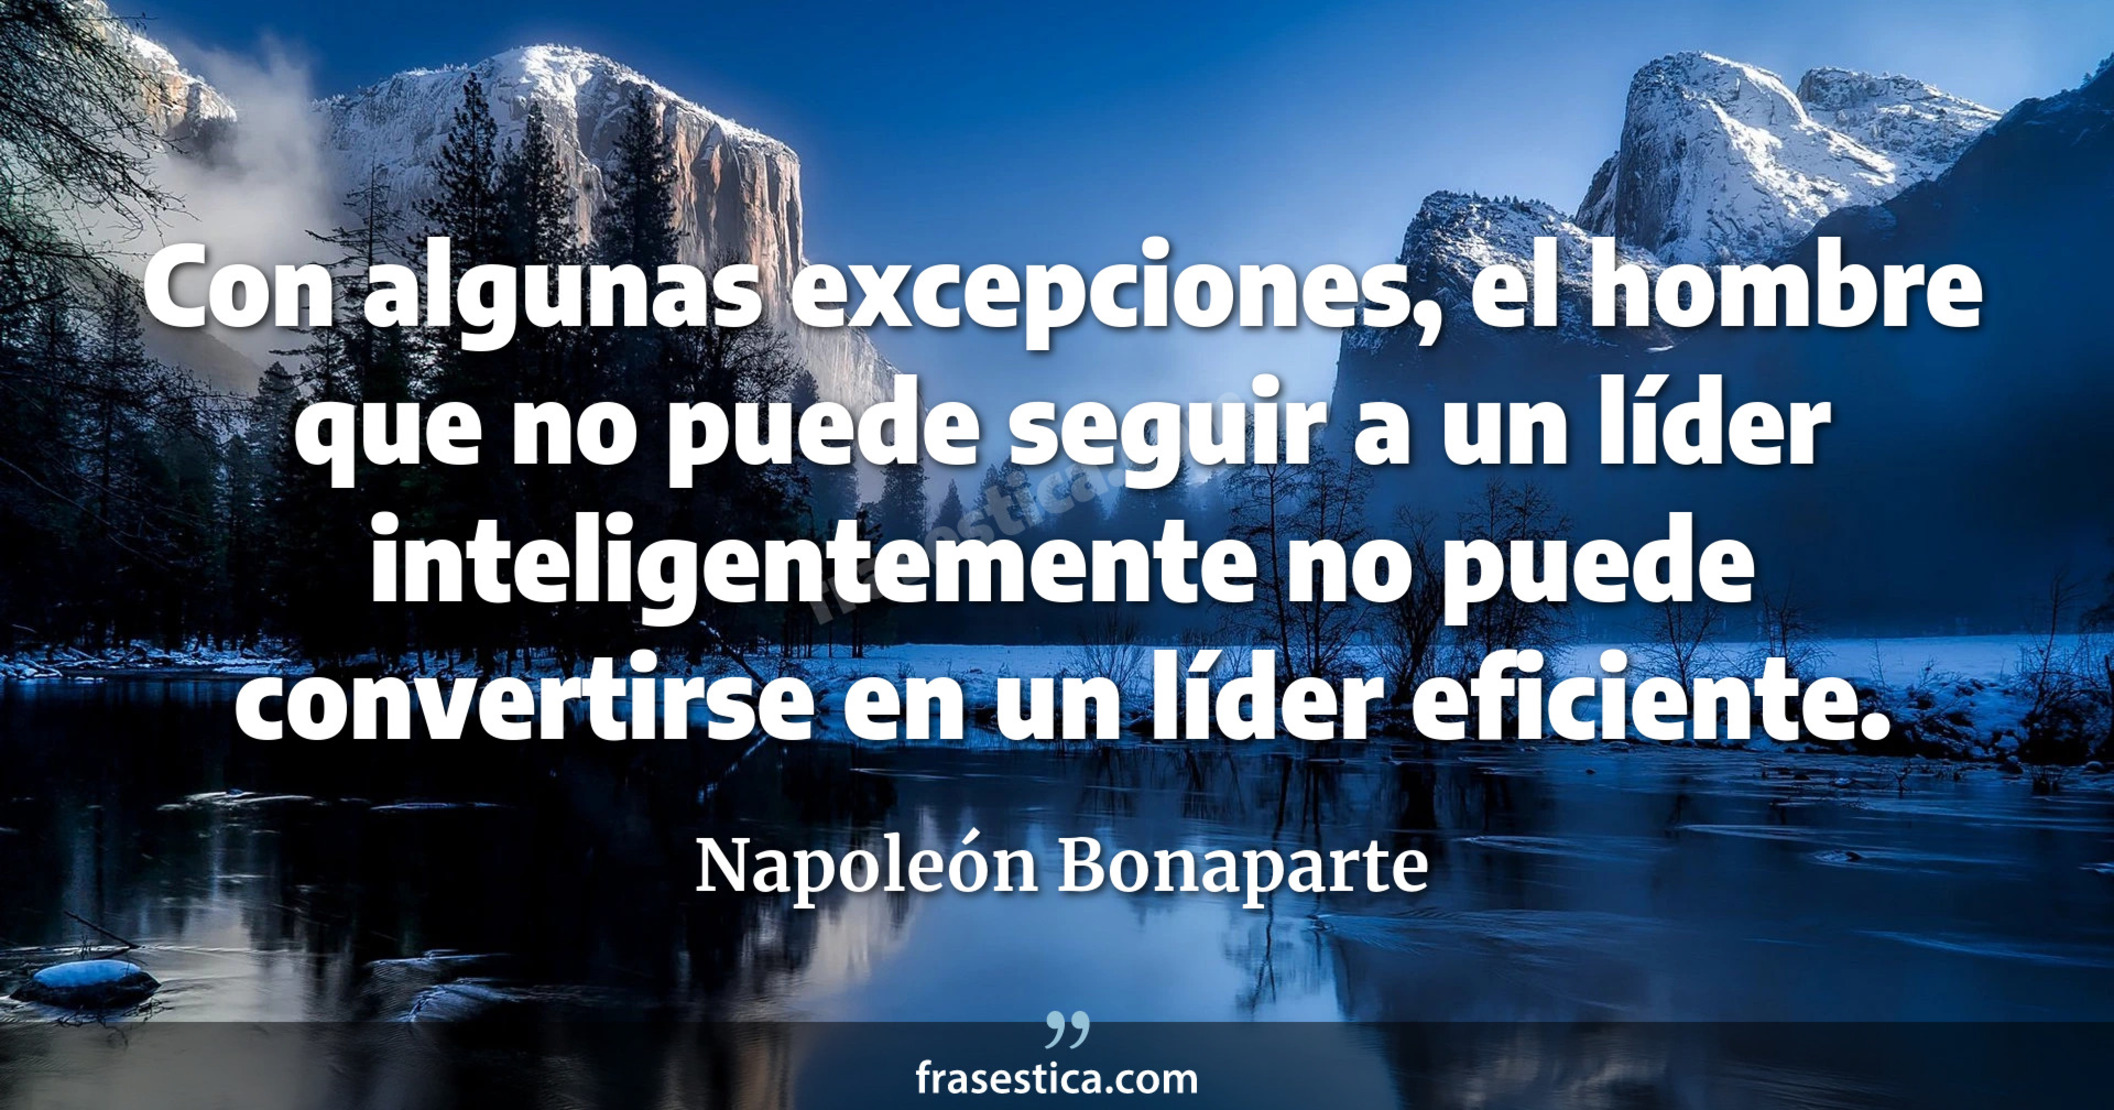 Con algunas excepciones, el hombre que no puede seguir a un líder inteligentemente no puede convertirse en un líder eficiente. - Napoleón Bonaparte